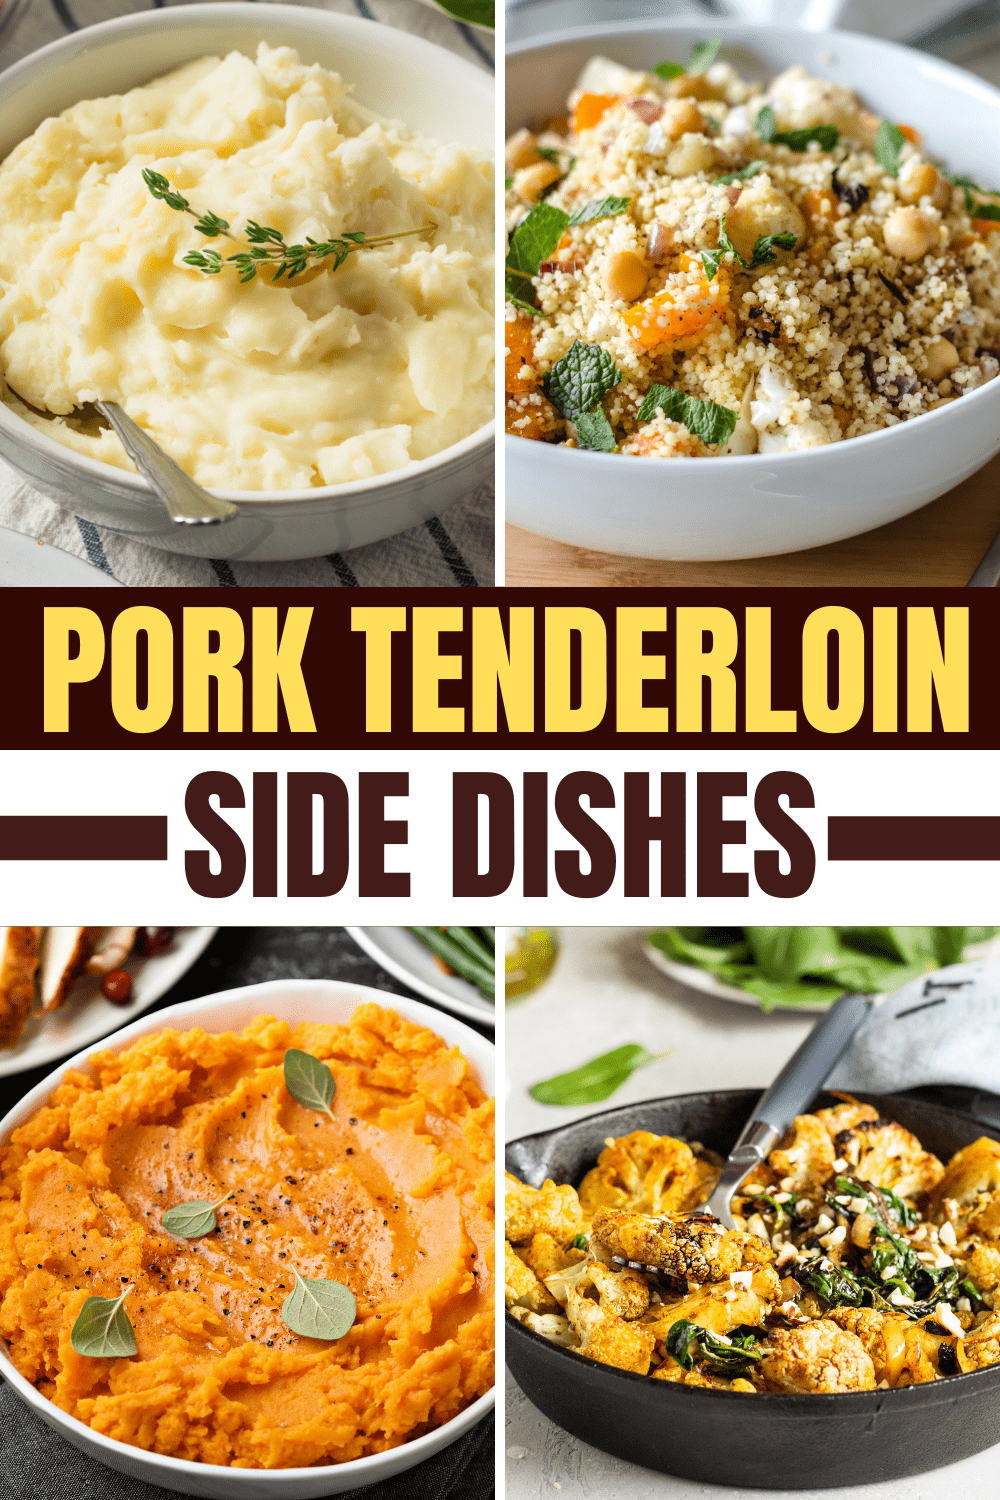 tasty recipes for pork tenderloin